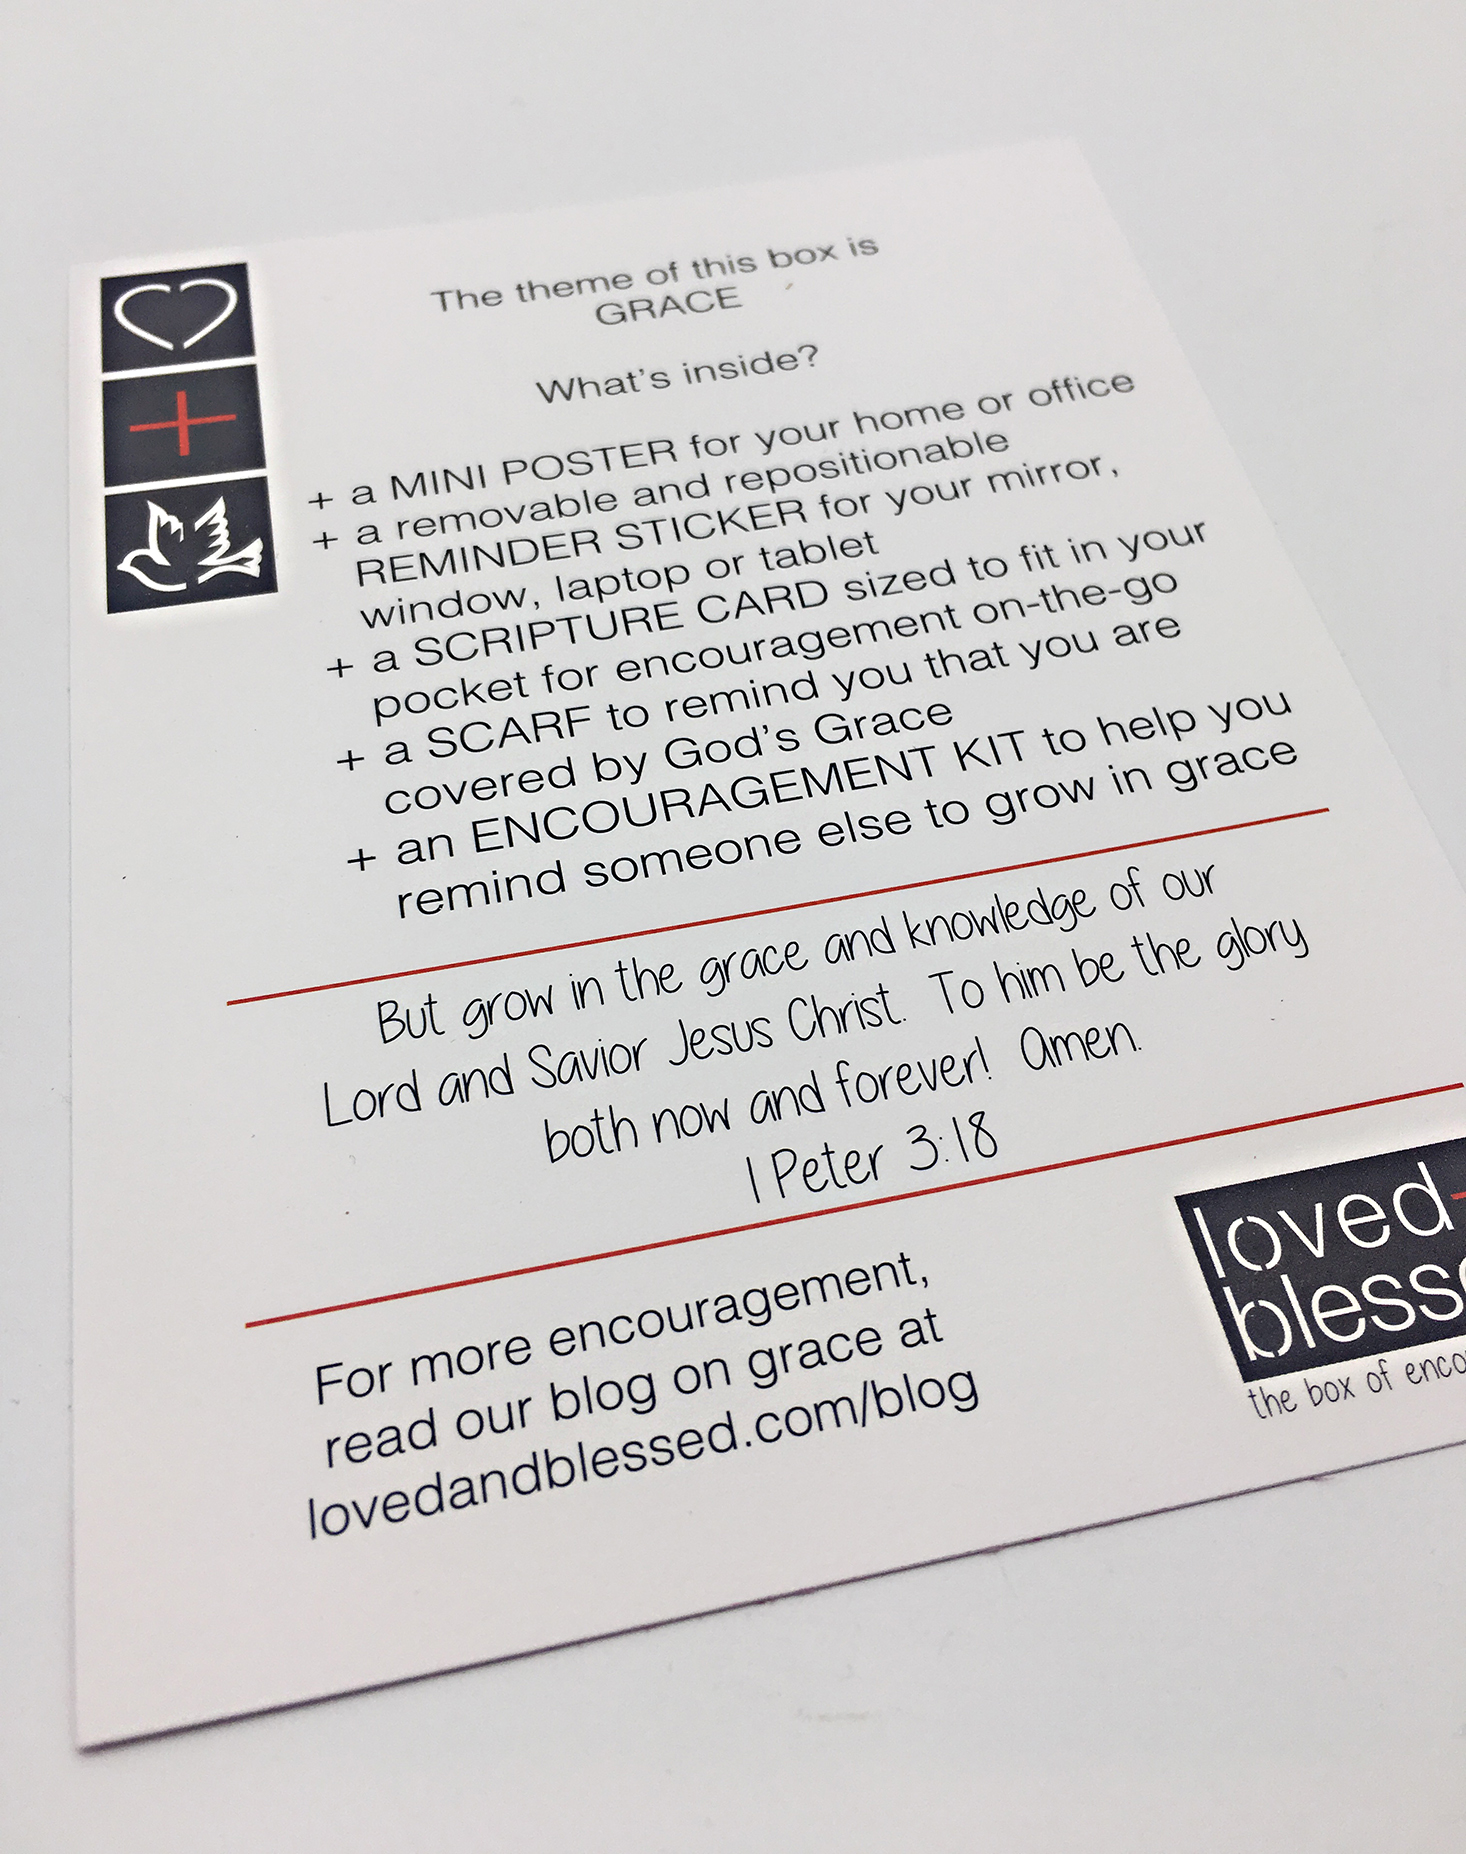 loved-blessed-november-2016-info-card